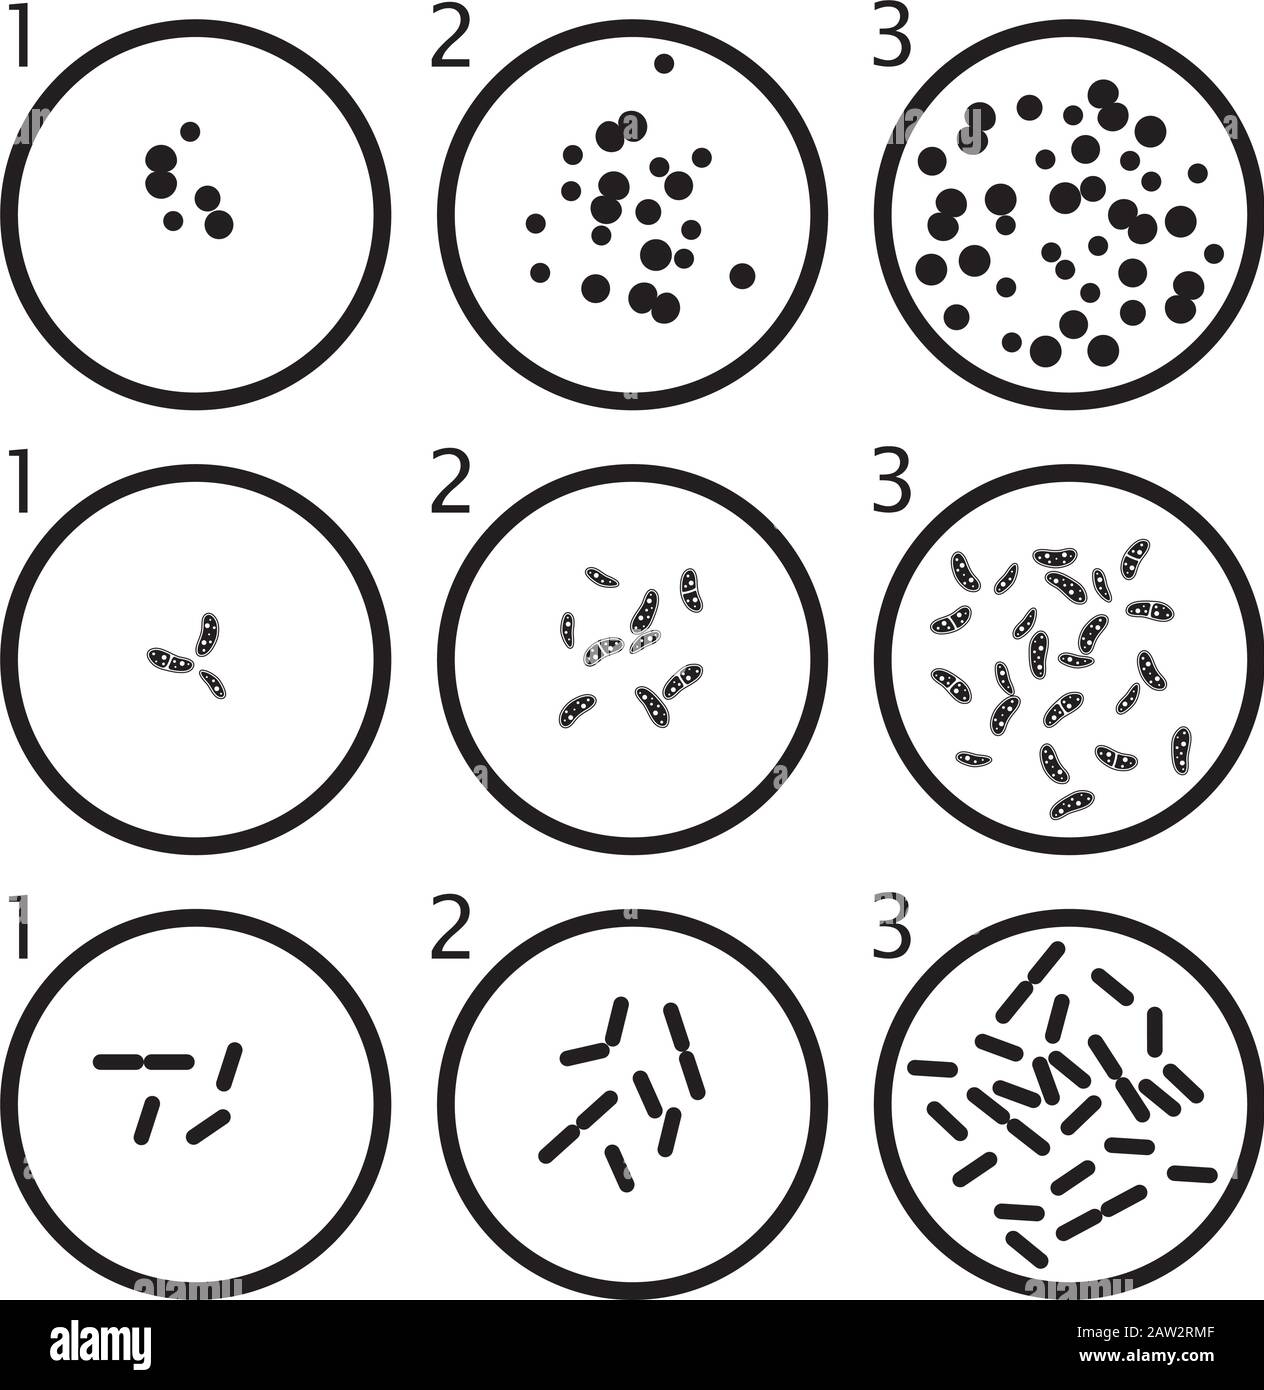 Vektor-Bakterien-Wachstumsstufen: Schwarze Bakterienzellen in Petrischalen isoliert auf weißem Hintergrund Stock Vektor